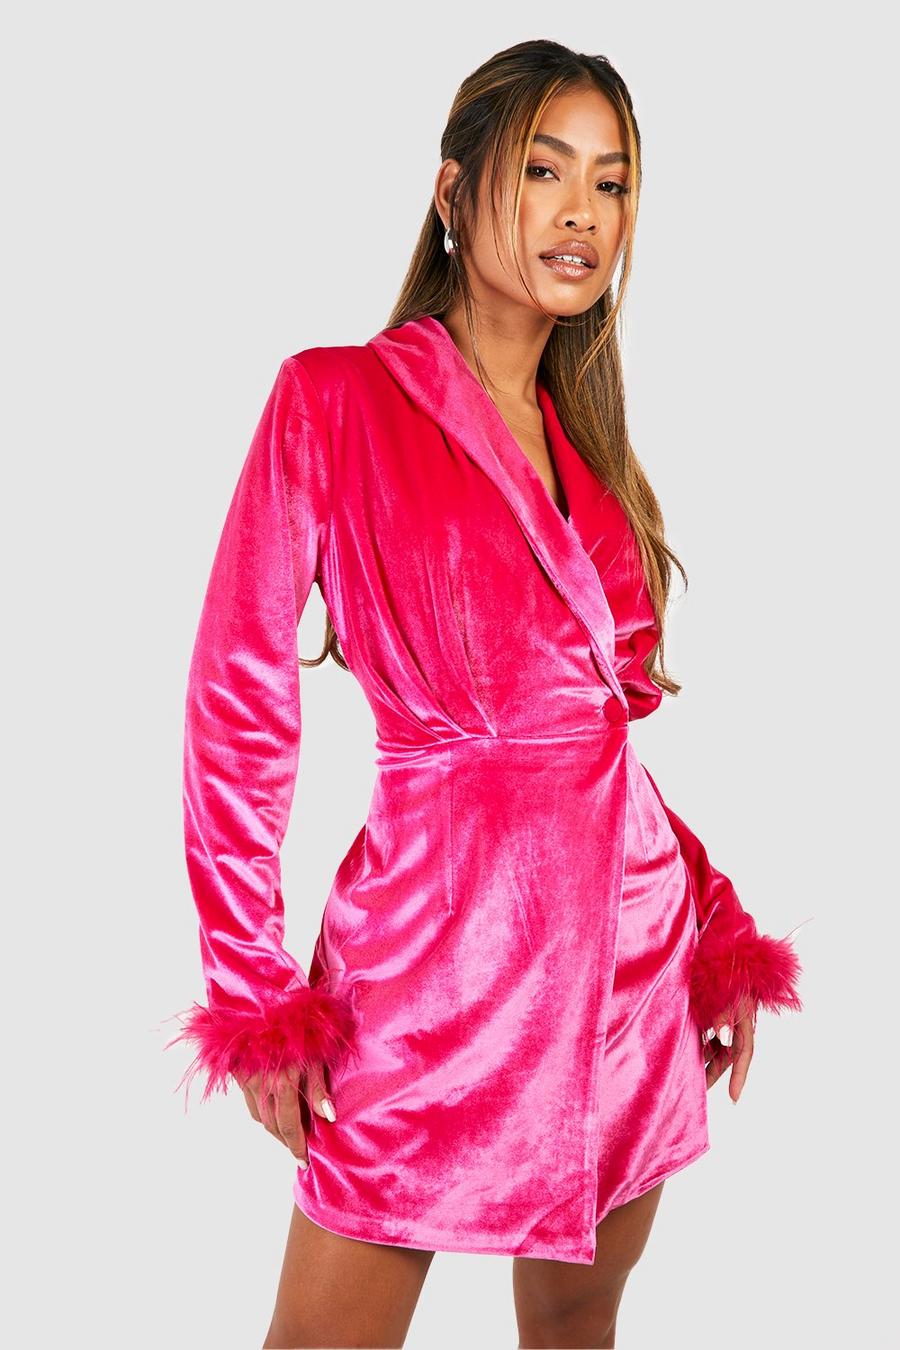 Hot pink שמלת בלייזר מעטפת מקטיפה עם גימור נוצות